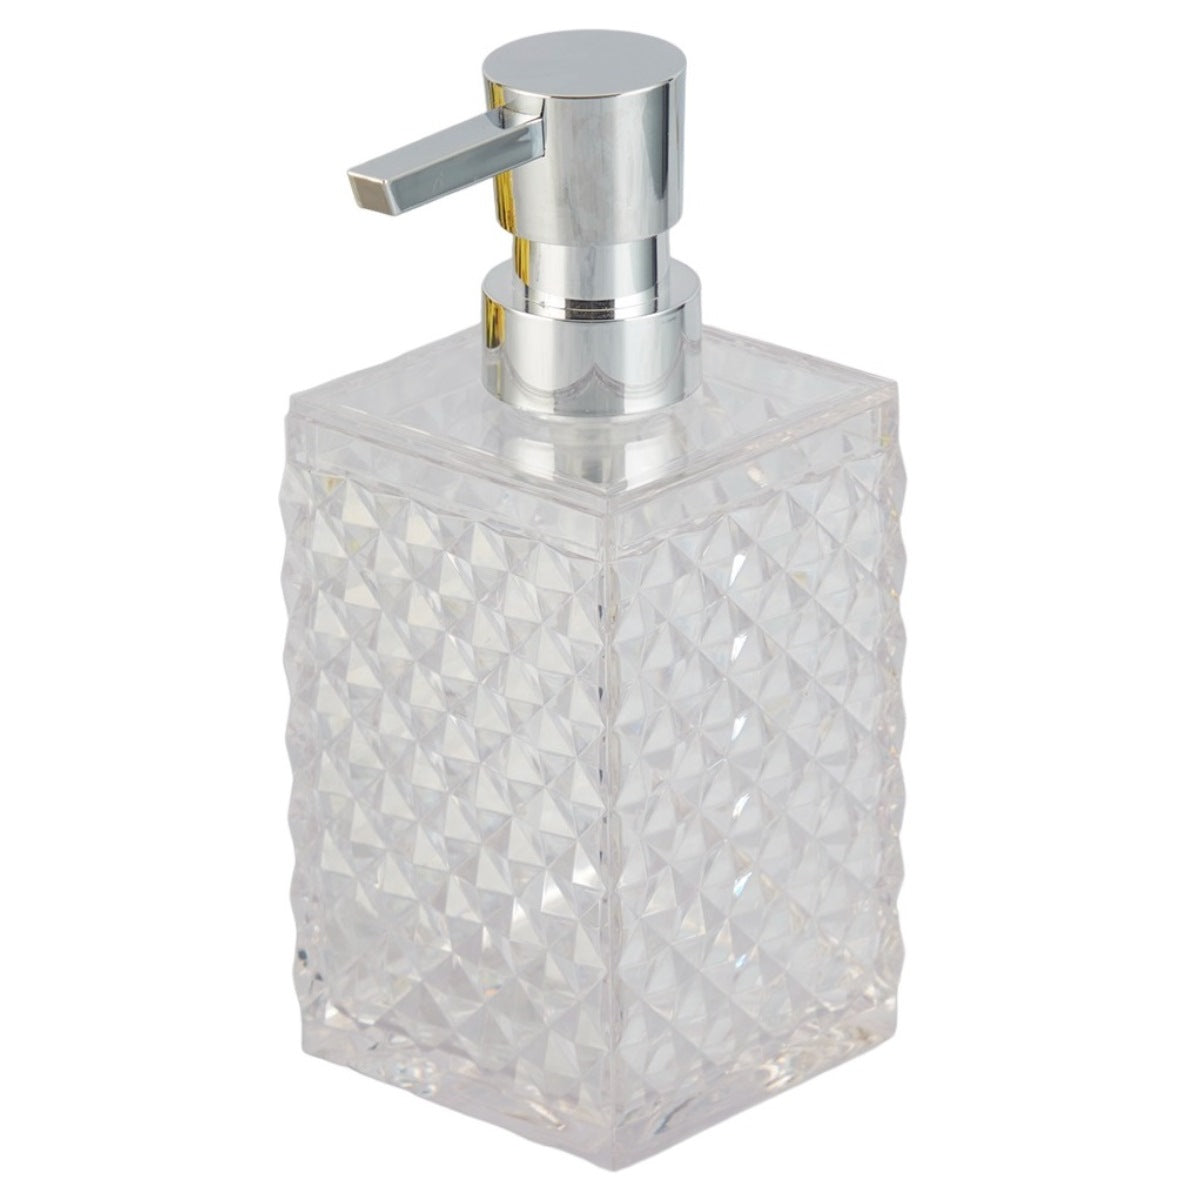 Acrylic Soap Dispenser Pump for Bathroom for Bath Gel, Lotion, Shampoo (9994)